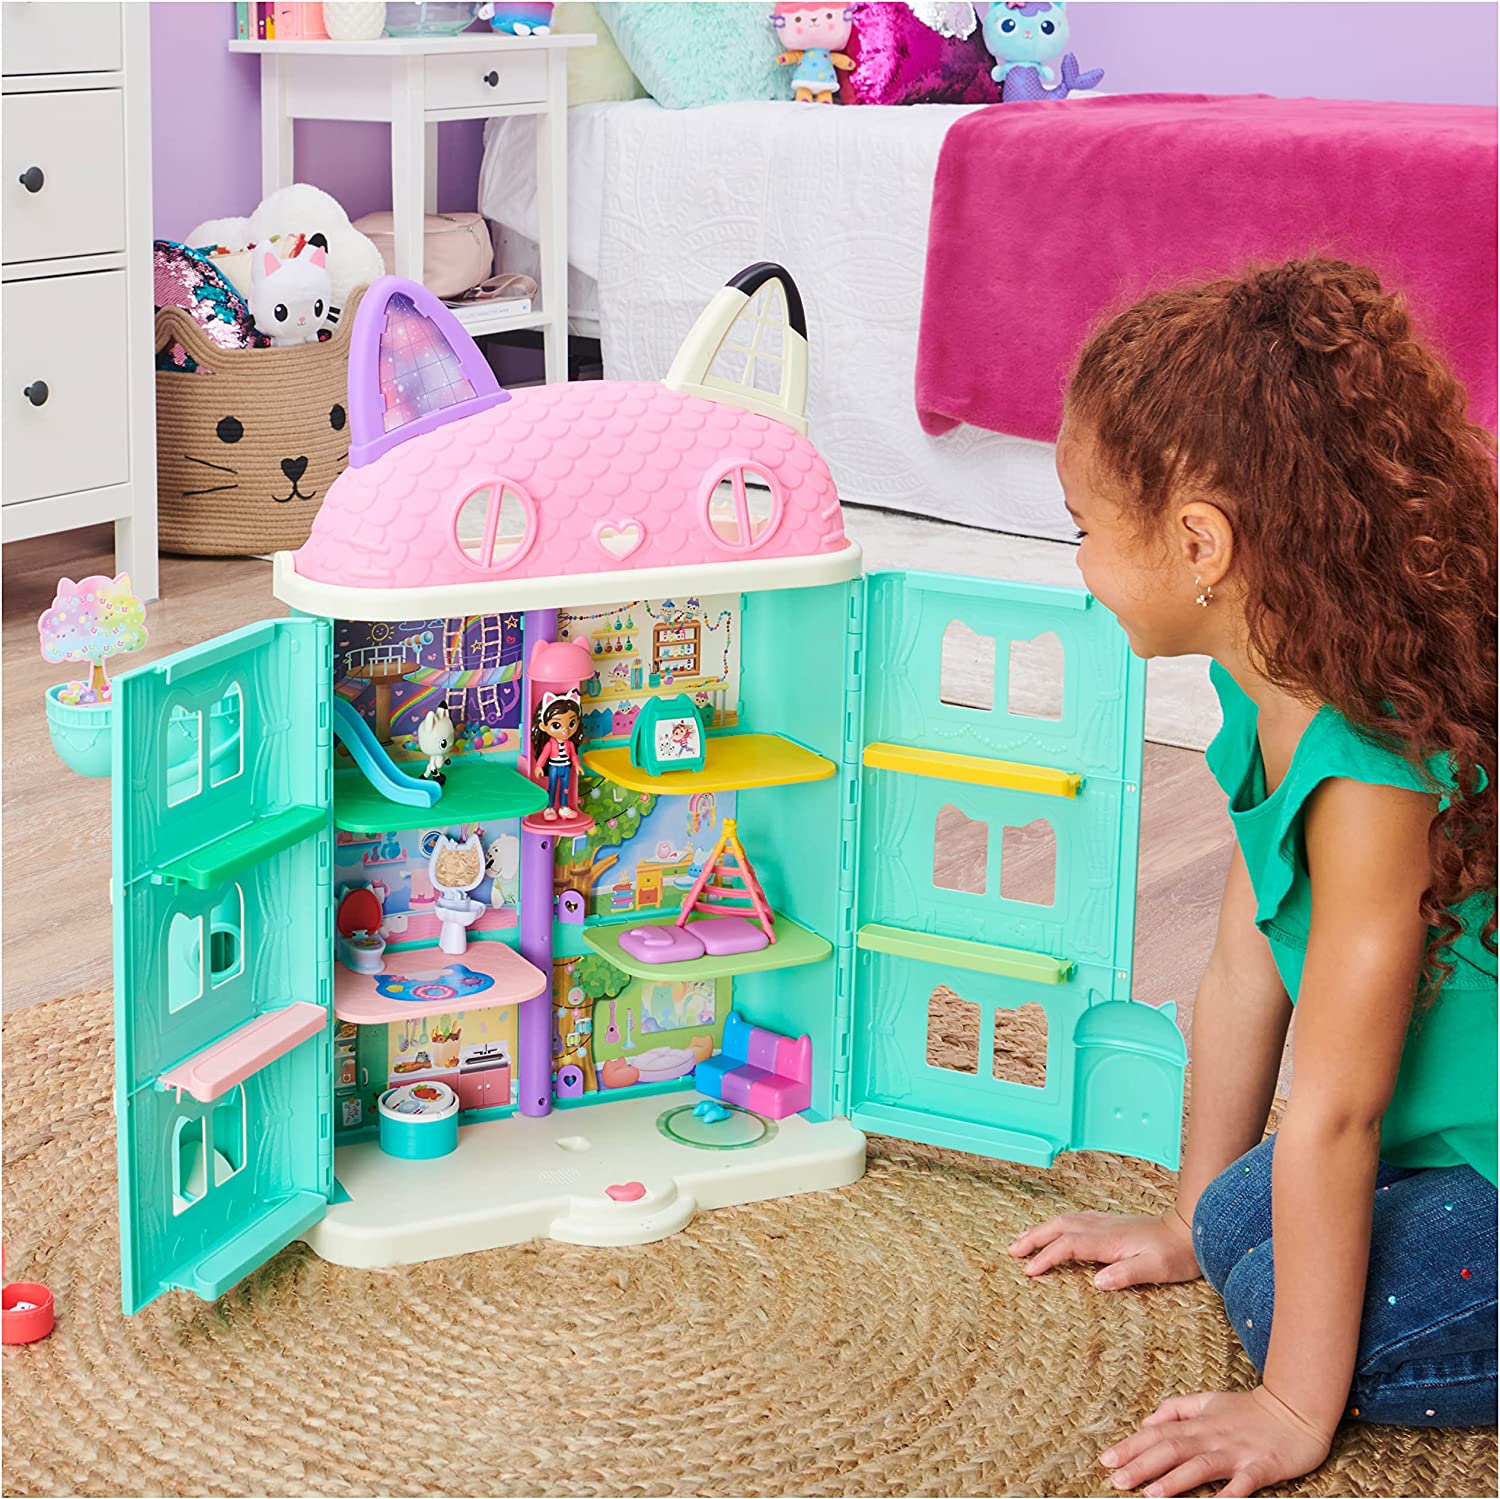 Ce jouet Gabby est la maison magique reprèsente la maison présente dans la série.